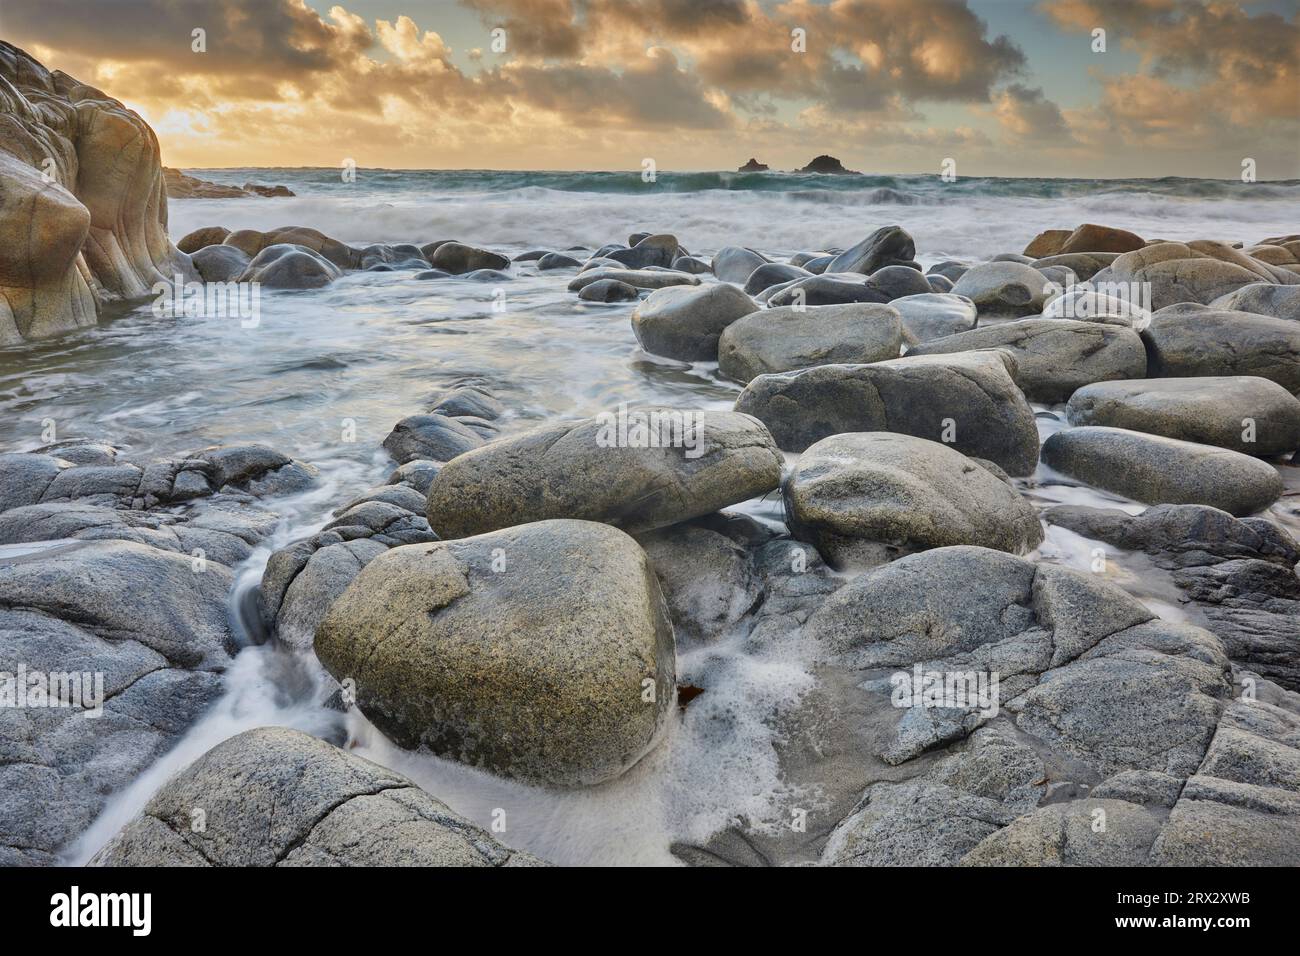 Les rouleaux de l'Atlantique déferlent autour des rochers de granit du rivage lors d'une marée montante au coucher du soleil, Porth Nanven, une crique isolée près de St. Juste Banque D'Images